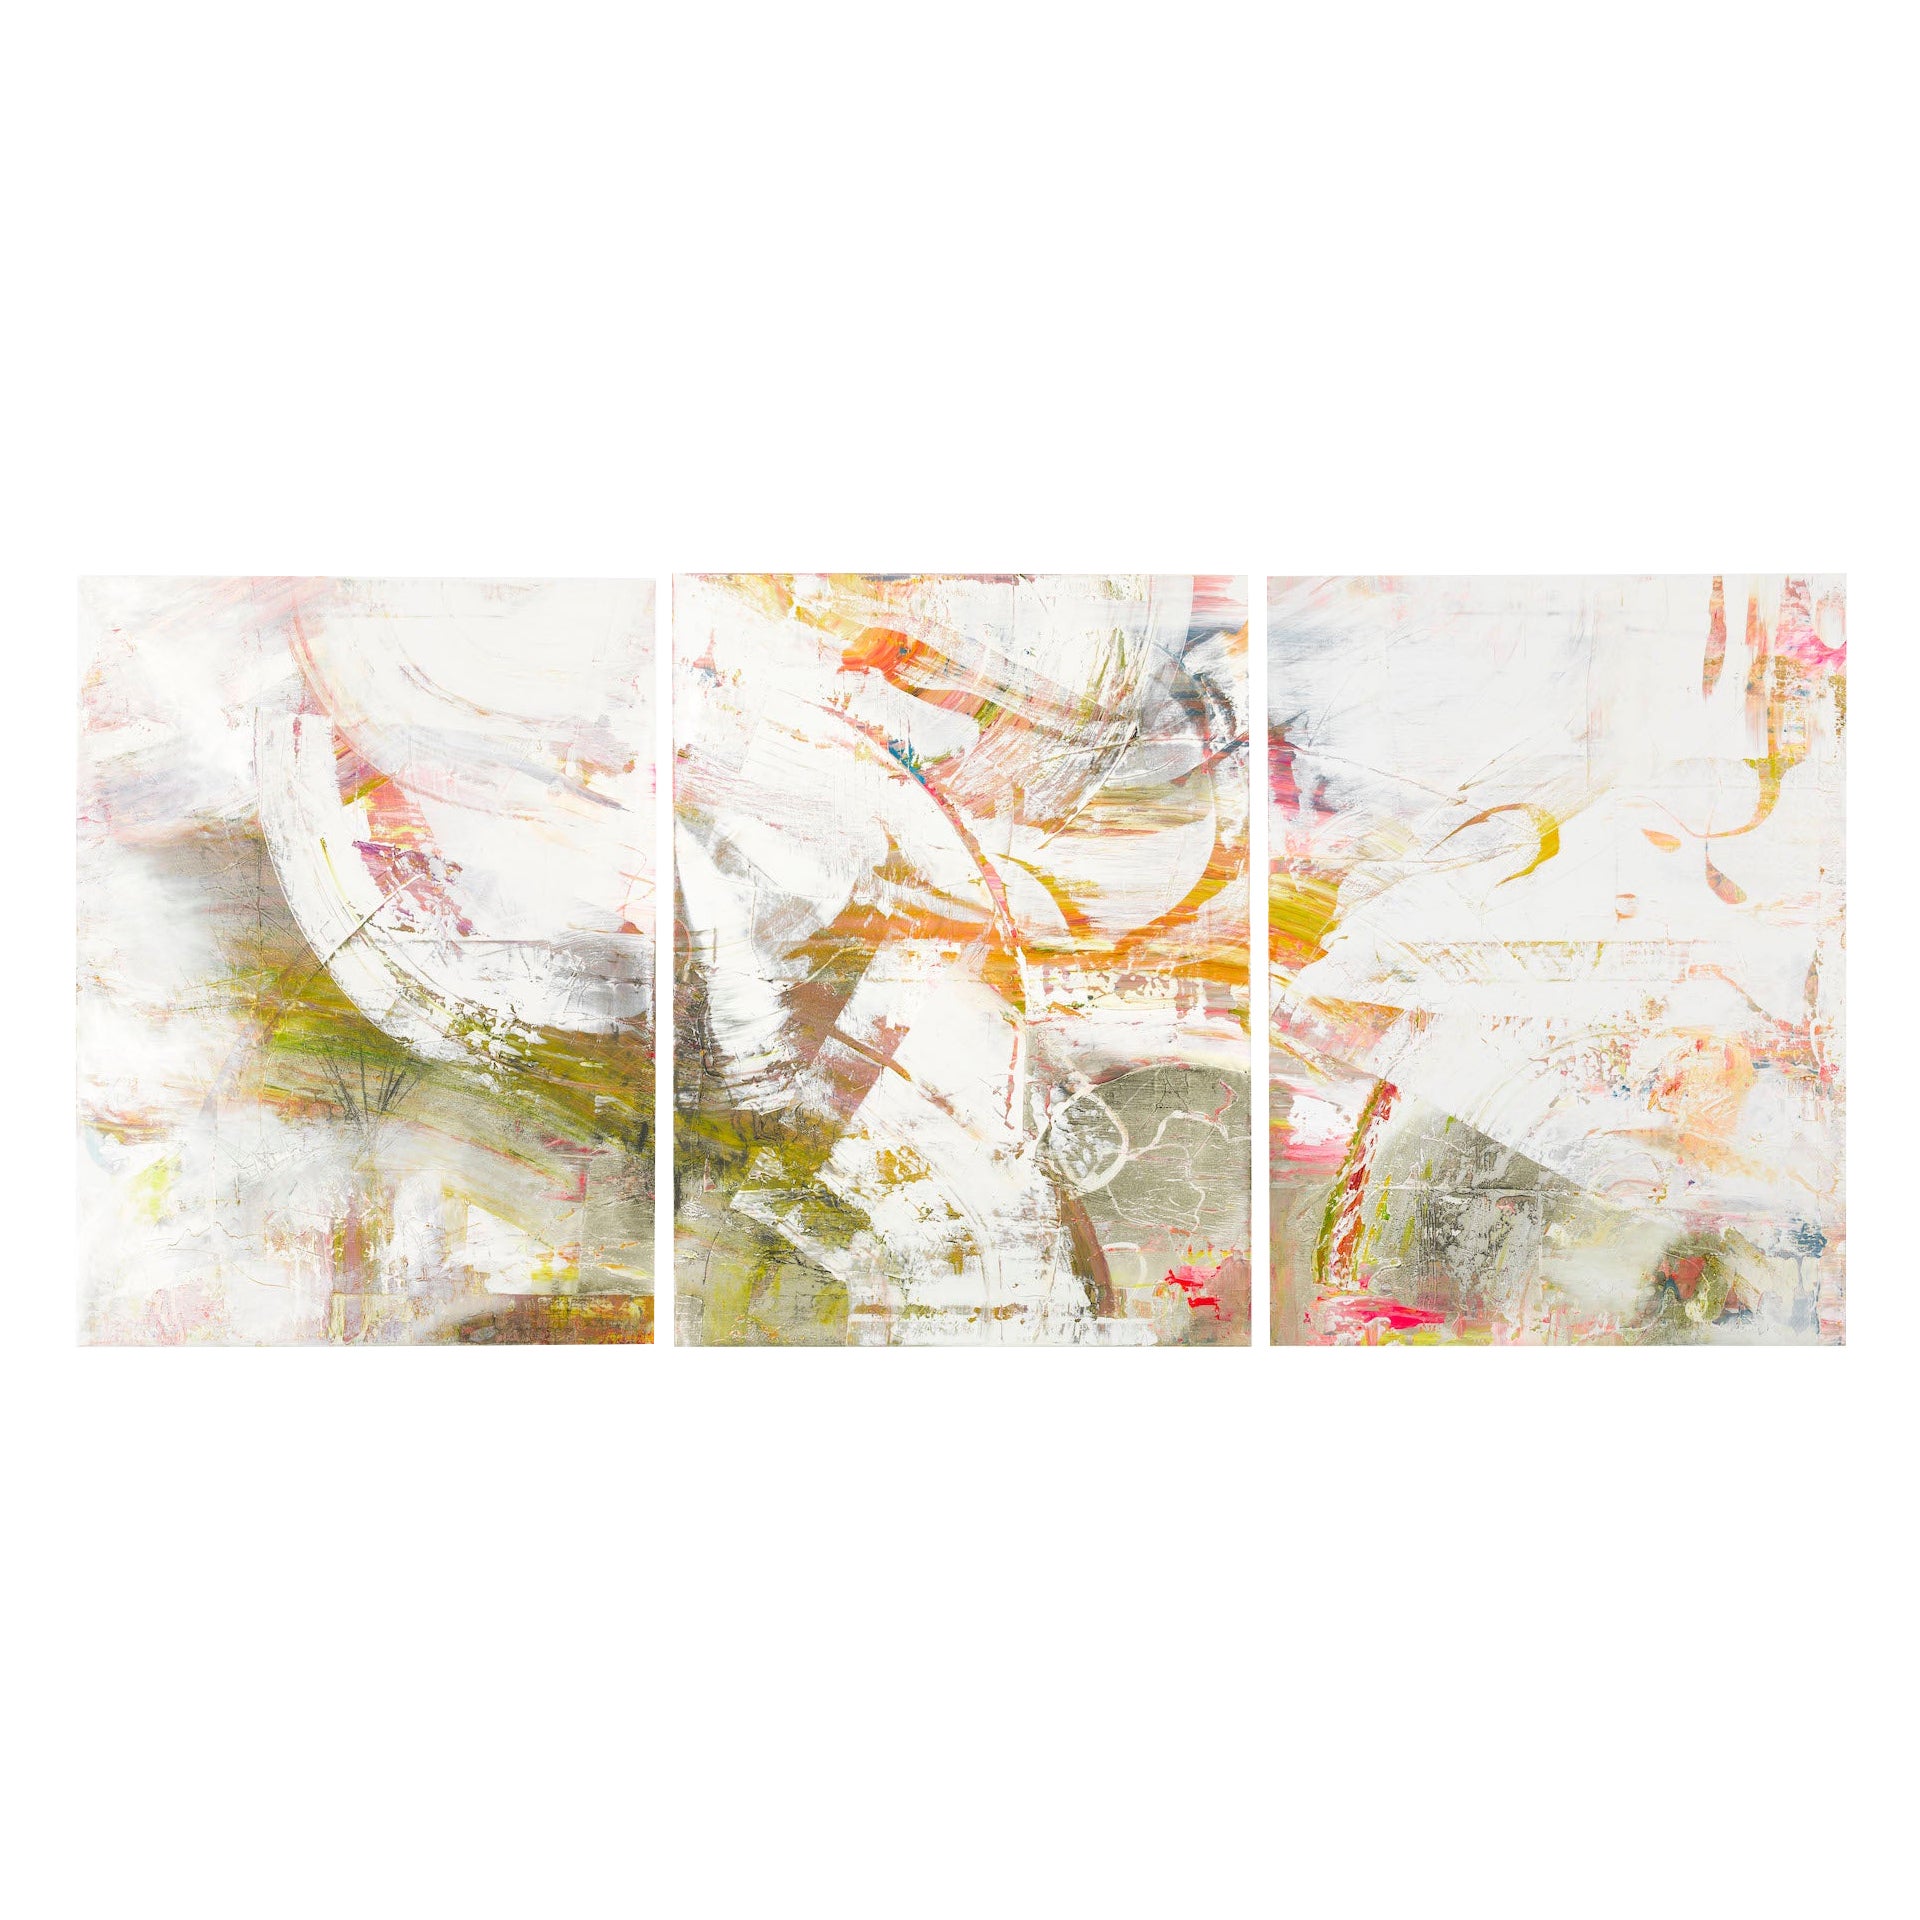 Großes zeitgenössisches impressionistisches Triptychon mit Farbblitzen auf milchigem Grund